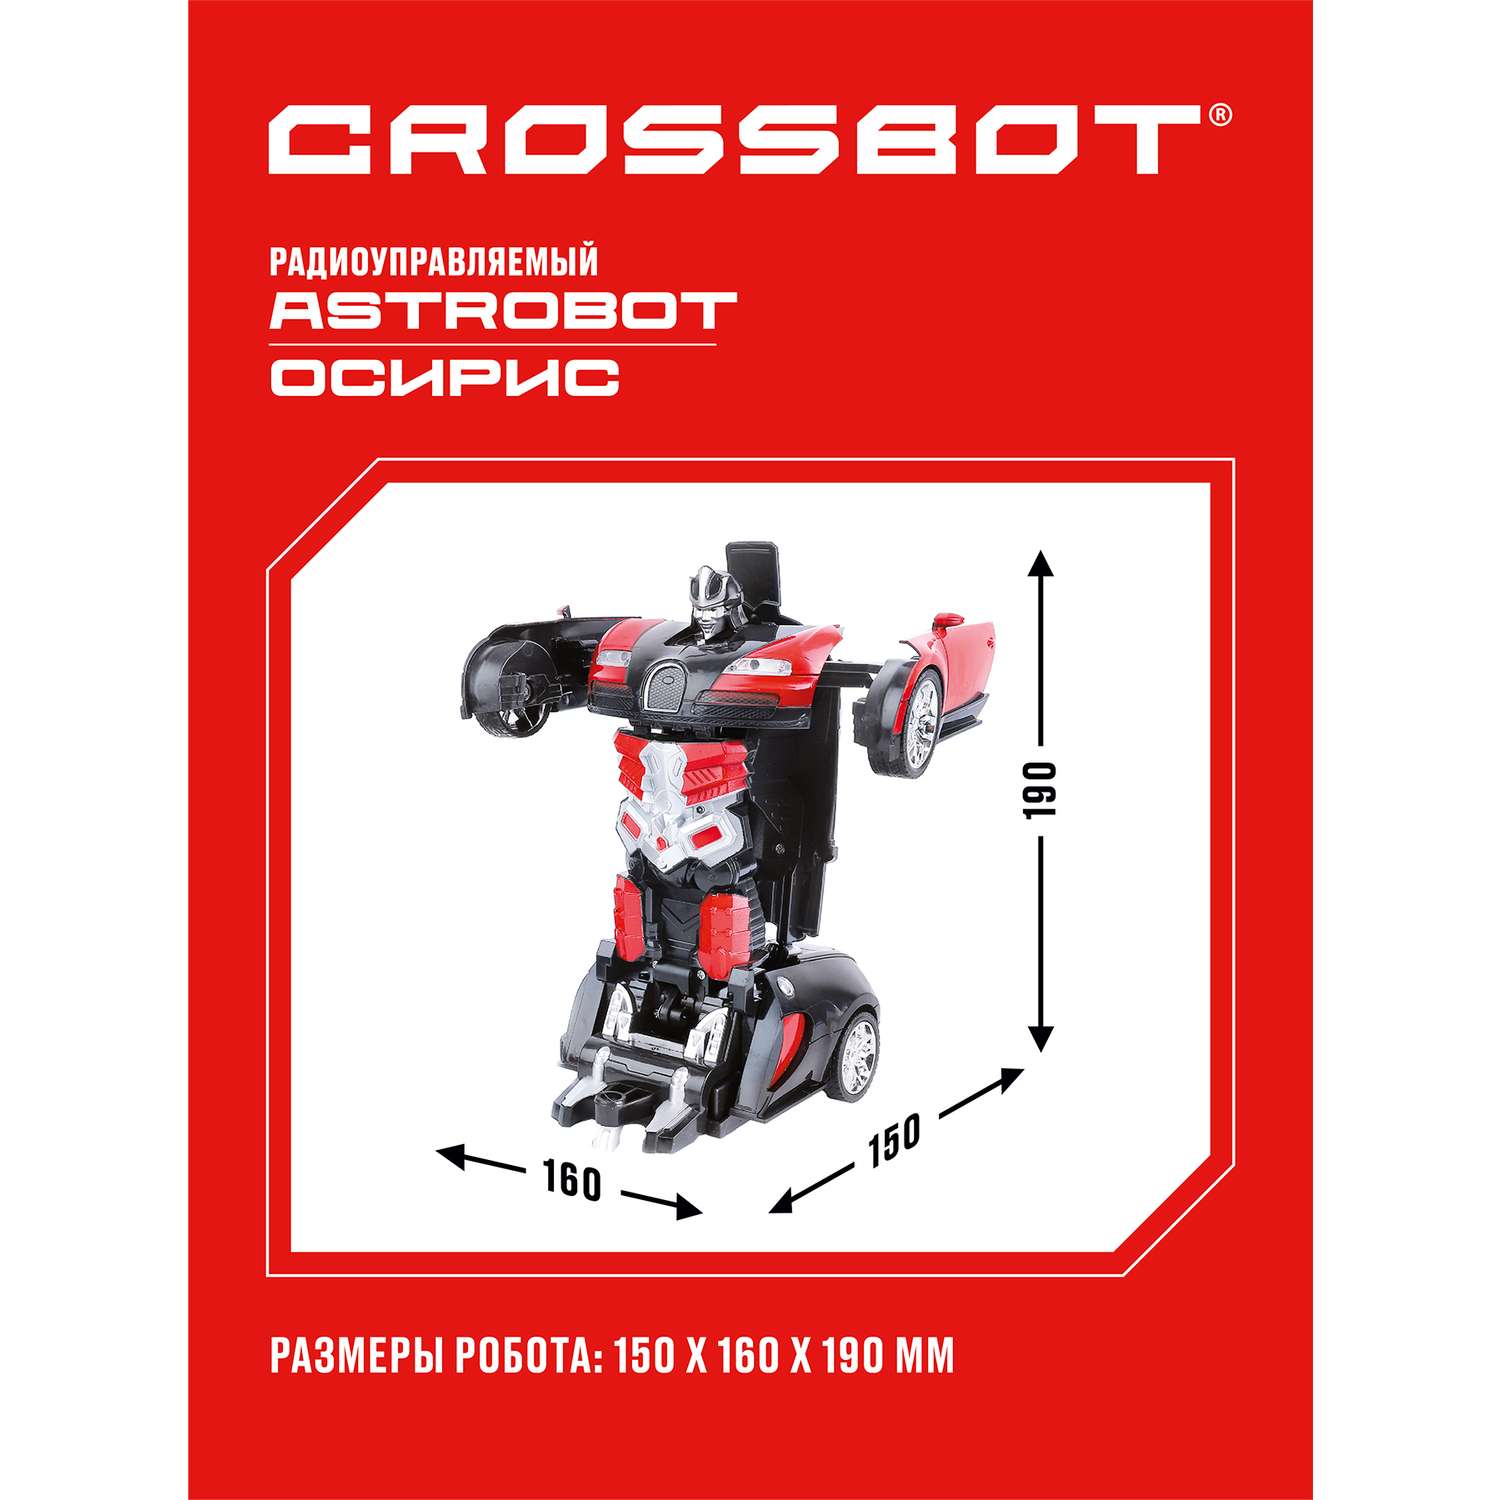 Машина на пульте управления CROSSBOT трансформер Astrobot Осирис - фото 2